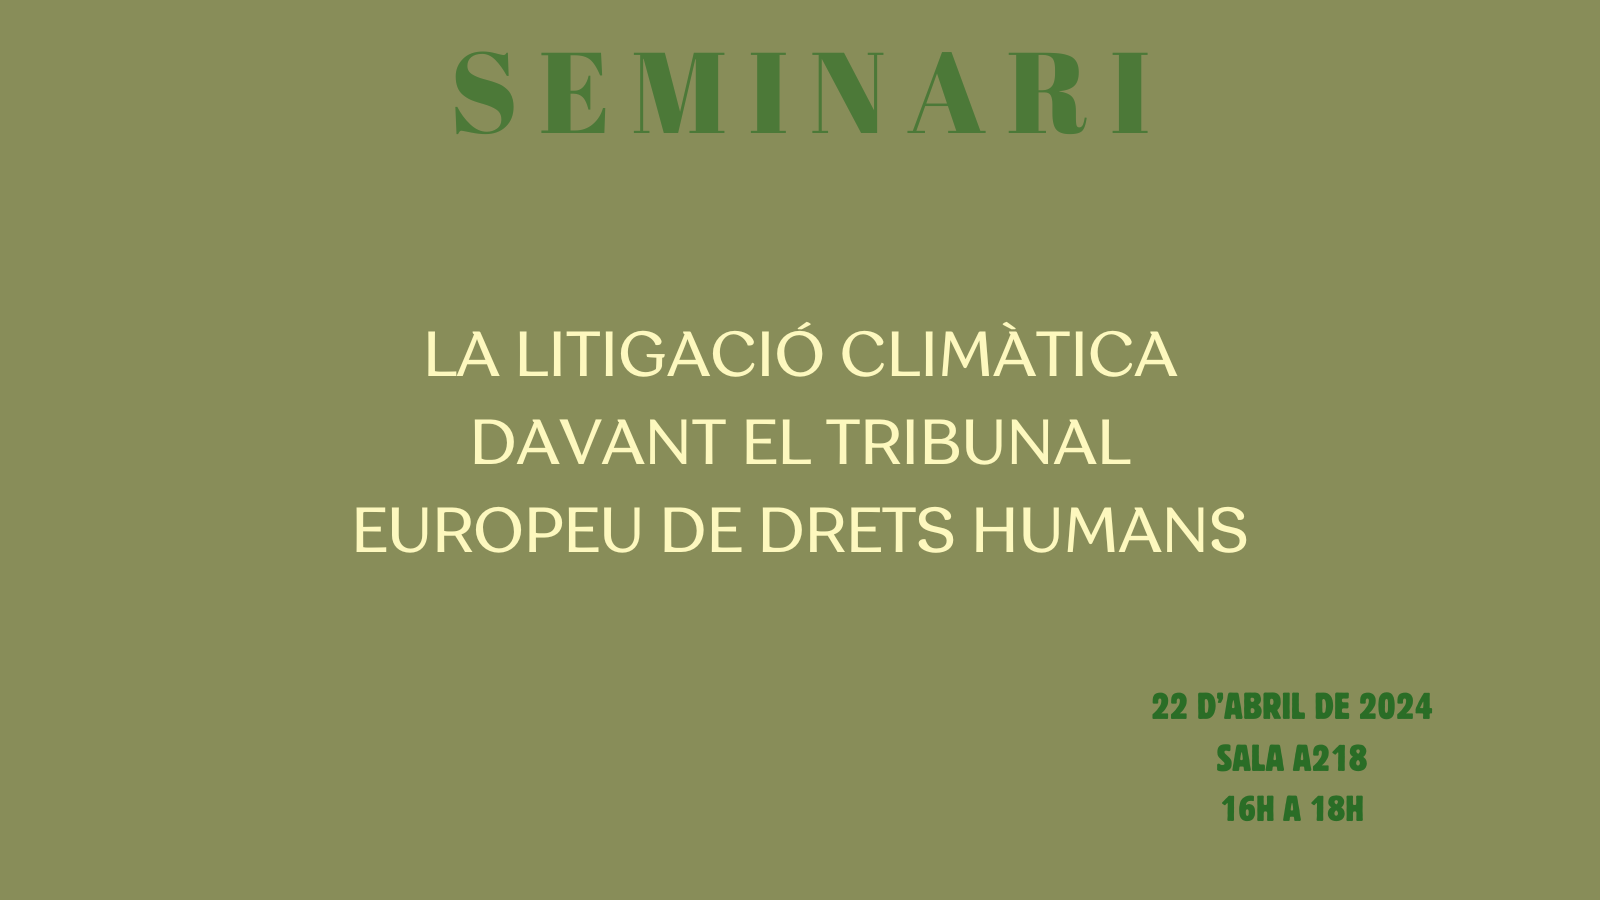 SEMINARI: LA LITIGACIÓ CLIMÀTICA DAVANT EL TRIBUNAL EUROPEU DE DRETS HUMANS